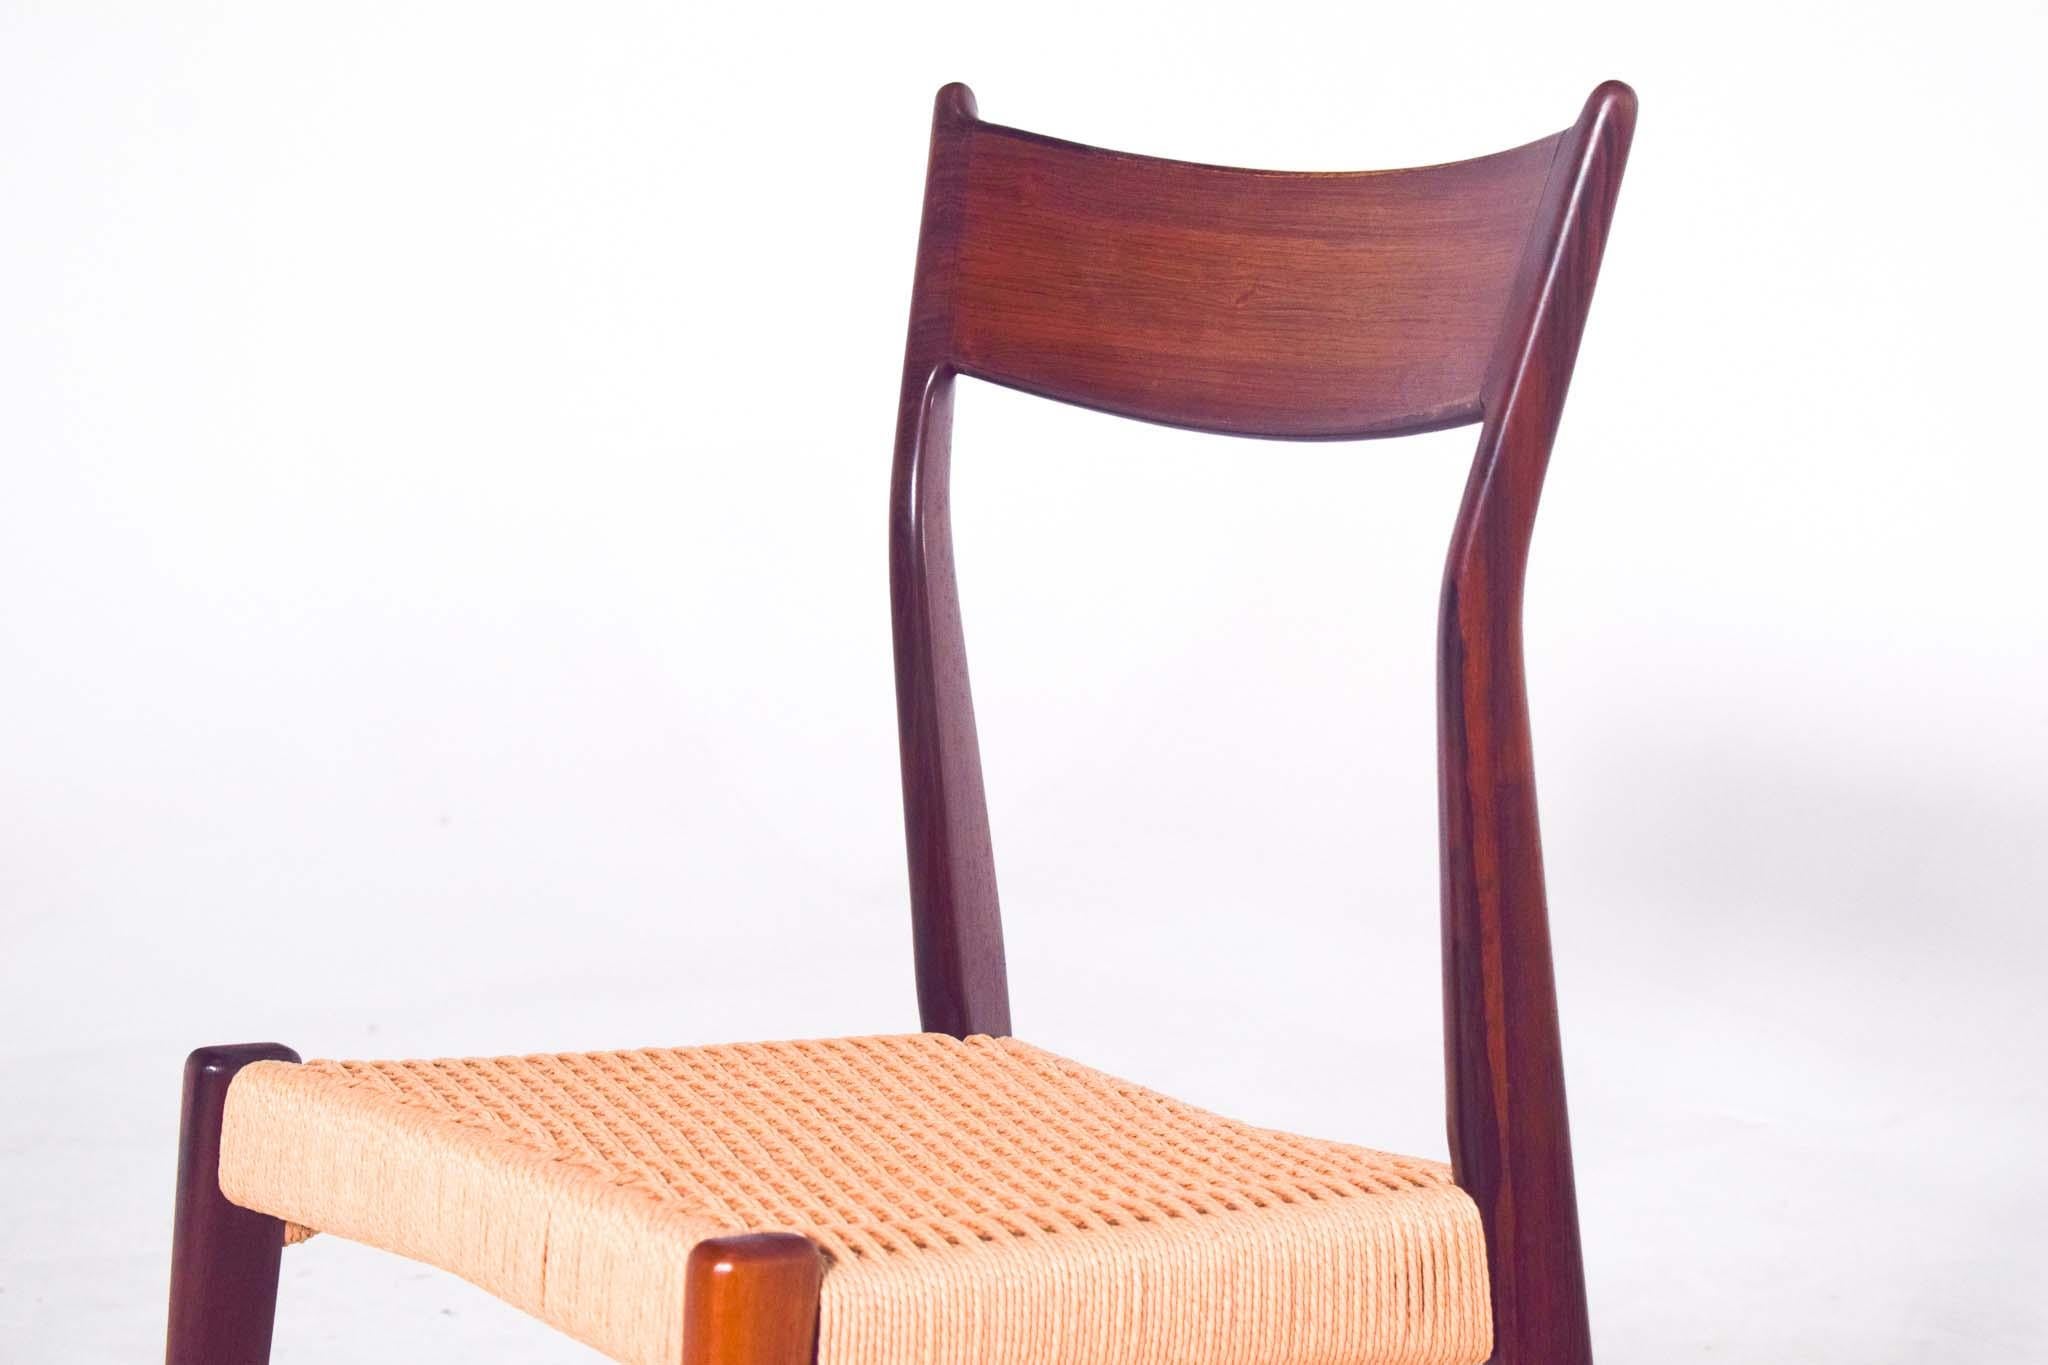 Ein wunderschöner Satz von 6 dänischen Palisander-Esszimmerstühlen von HP Hansen für Randers Mobelfabrik, Dänemark. Gepolsterte Sitze aus Papierkordel. Diese fantastisch geformten dänischen Designstühle sind aus schönem Palisanderholz gefertigt.